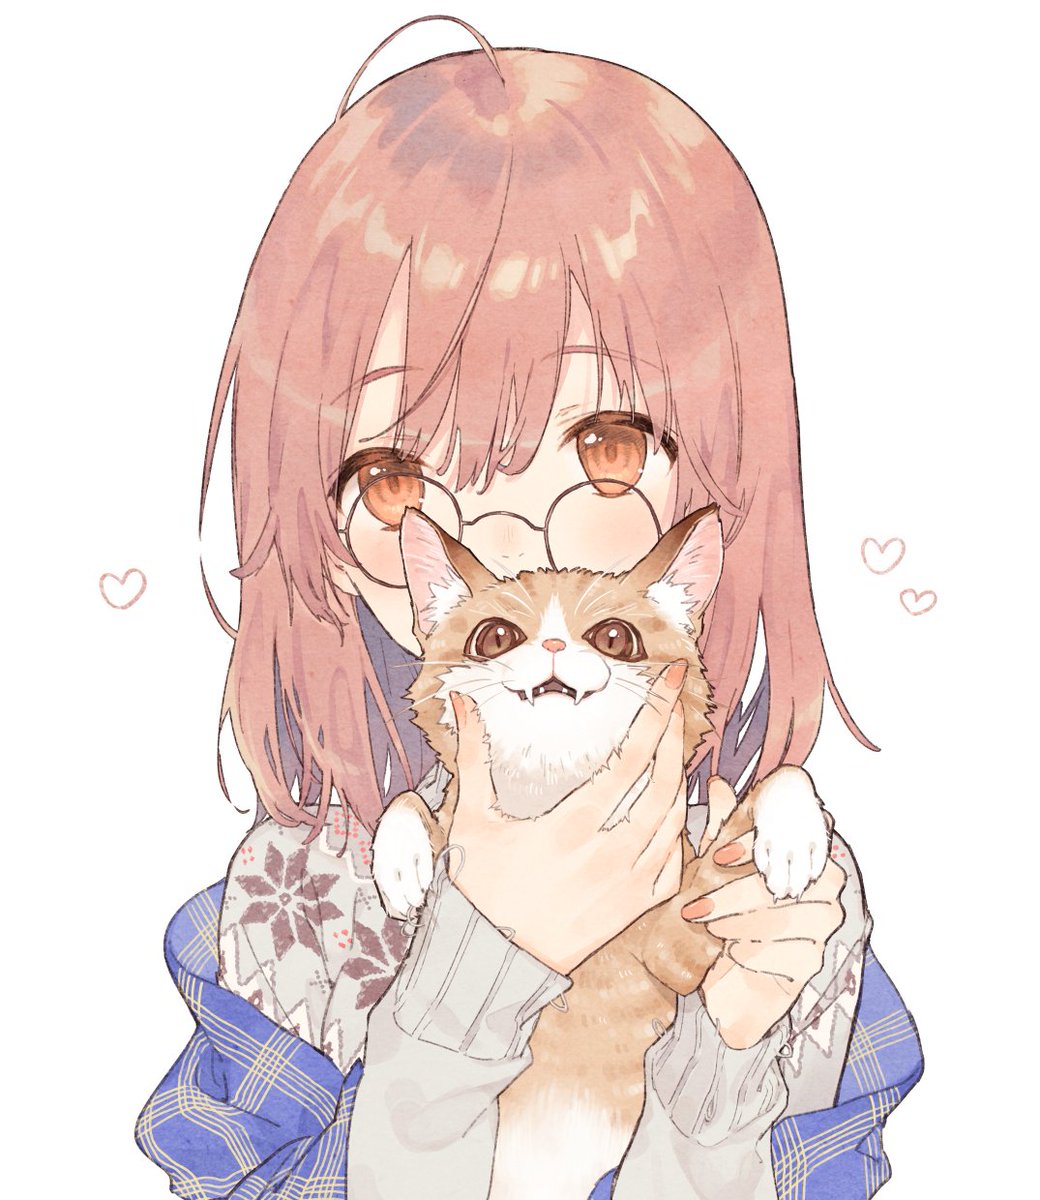 1girl holding glasses white background holding animal round eyewear simple background  illustration images